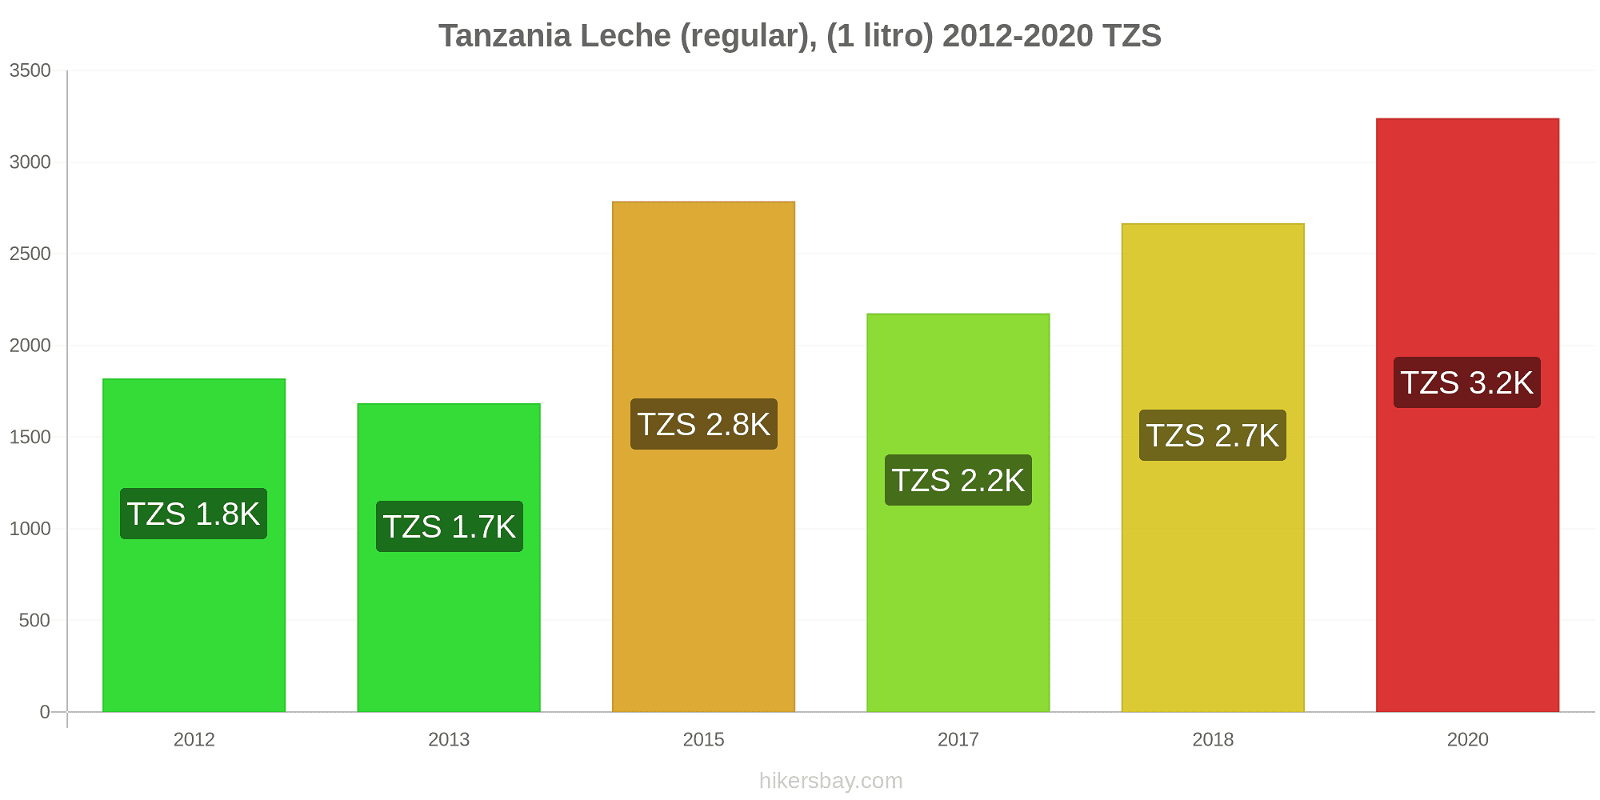 Tanzania cambios de precios Leche (Regular), (1 litro) hikersbay.com